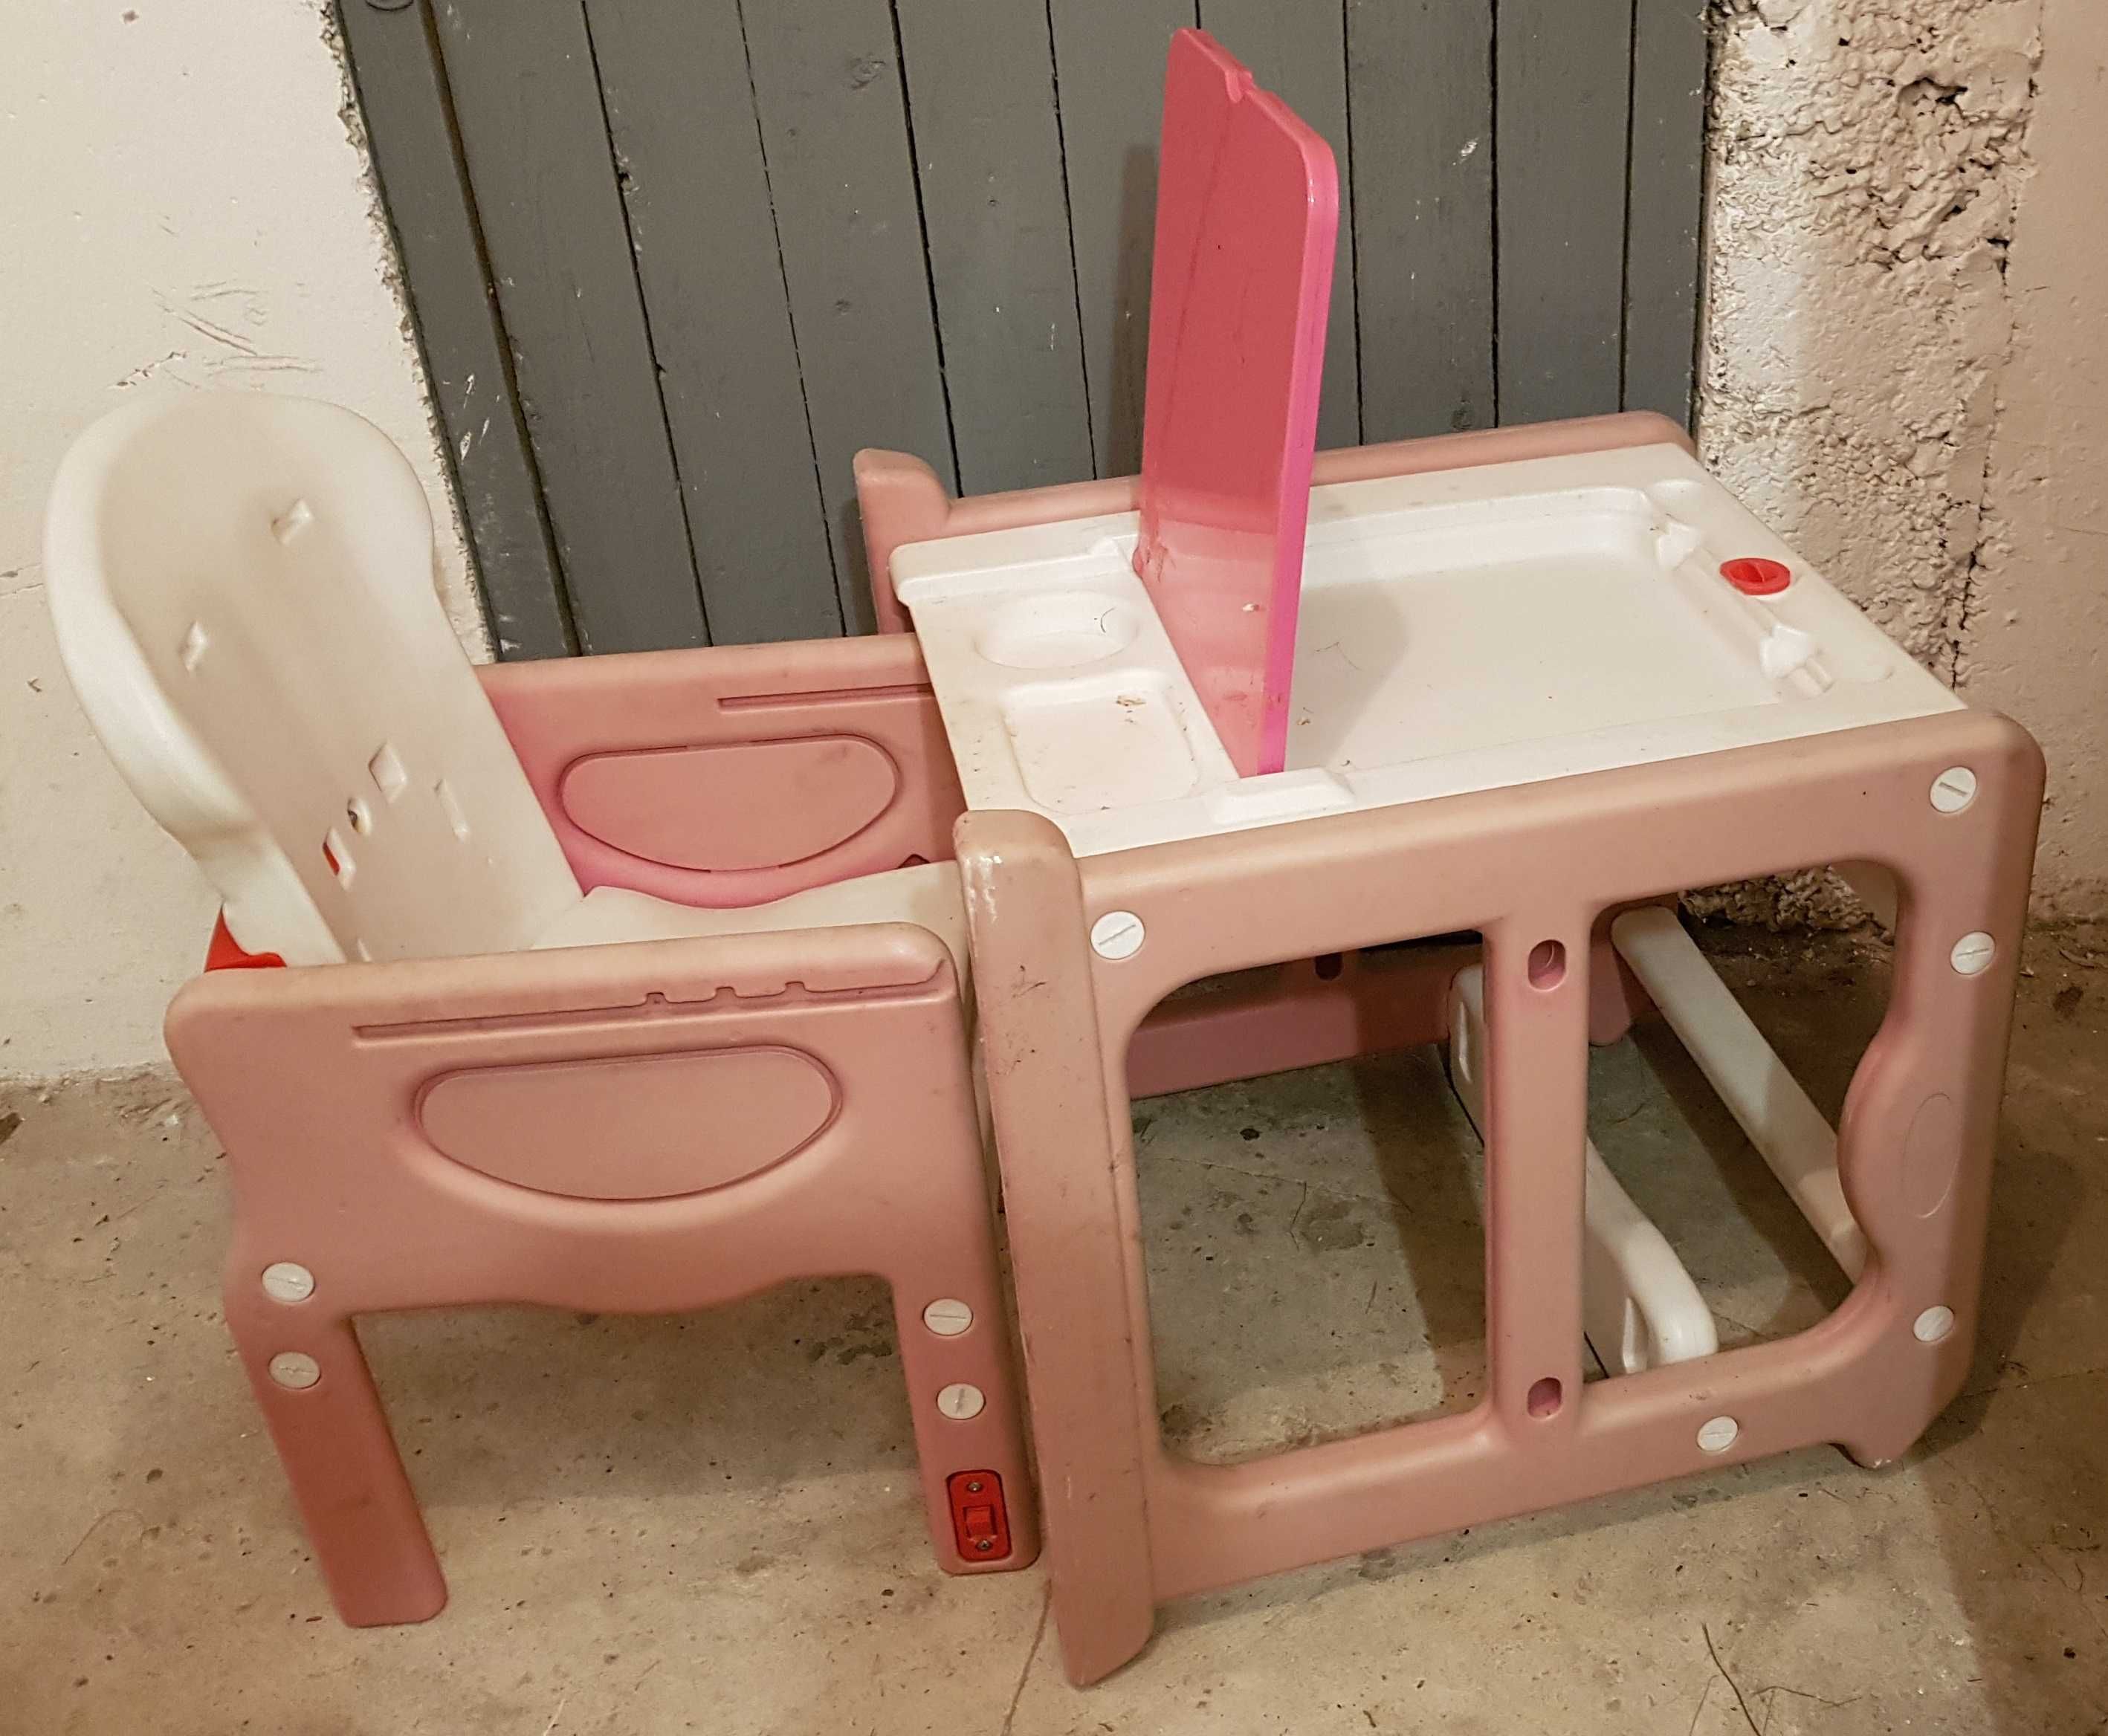 Stolik + Fotelik do karmienia dziecka, kilka zastosowań - 3w1